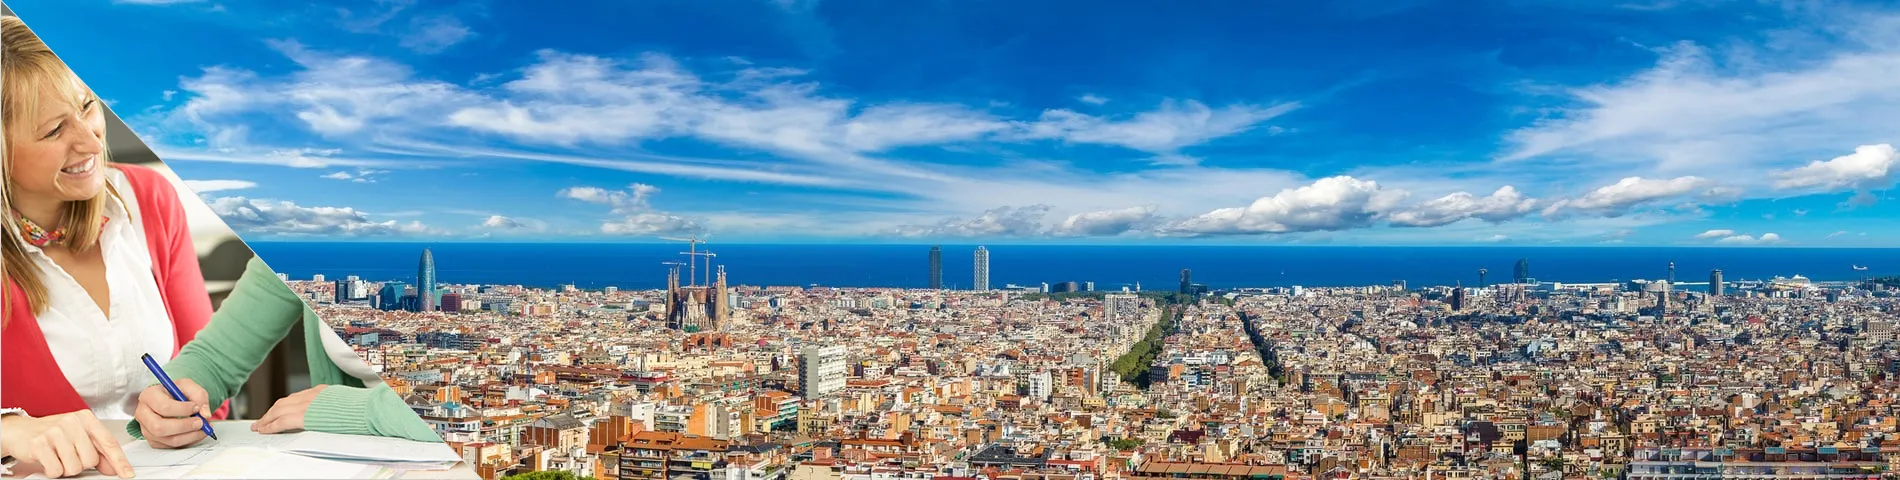 Barcelona - Študujte a bývajte v dome učiteľa